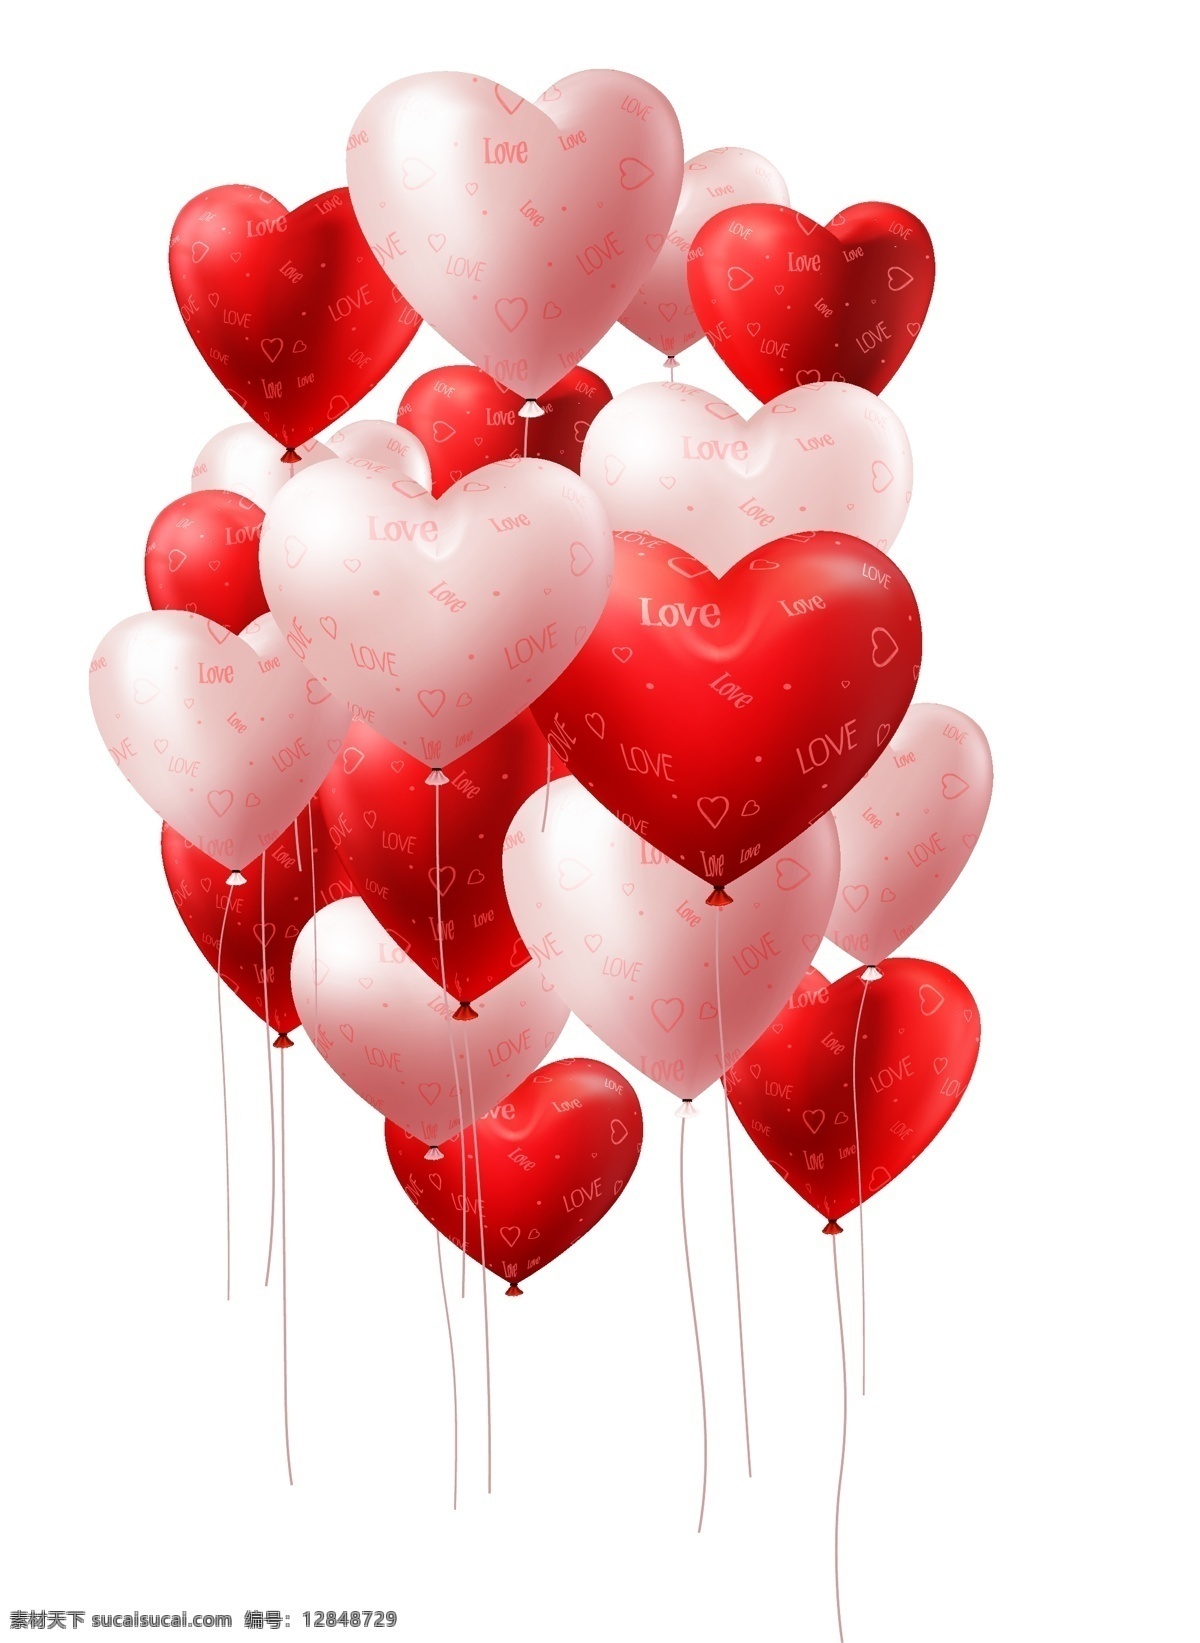 心形气球 心型气球 爱心 红色爱心 爱情心型 心形